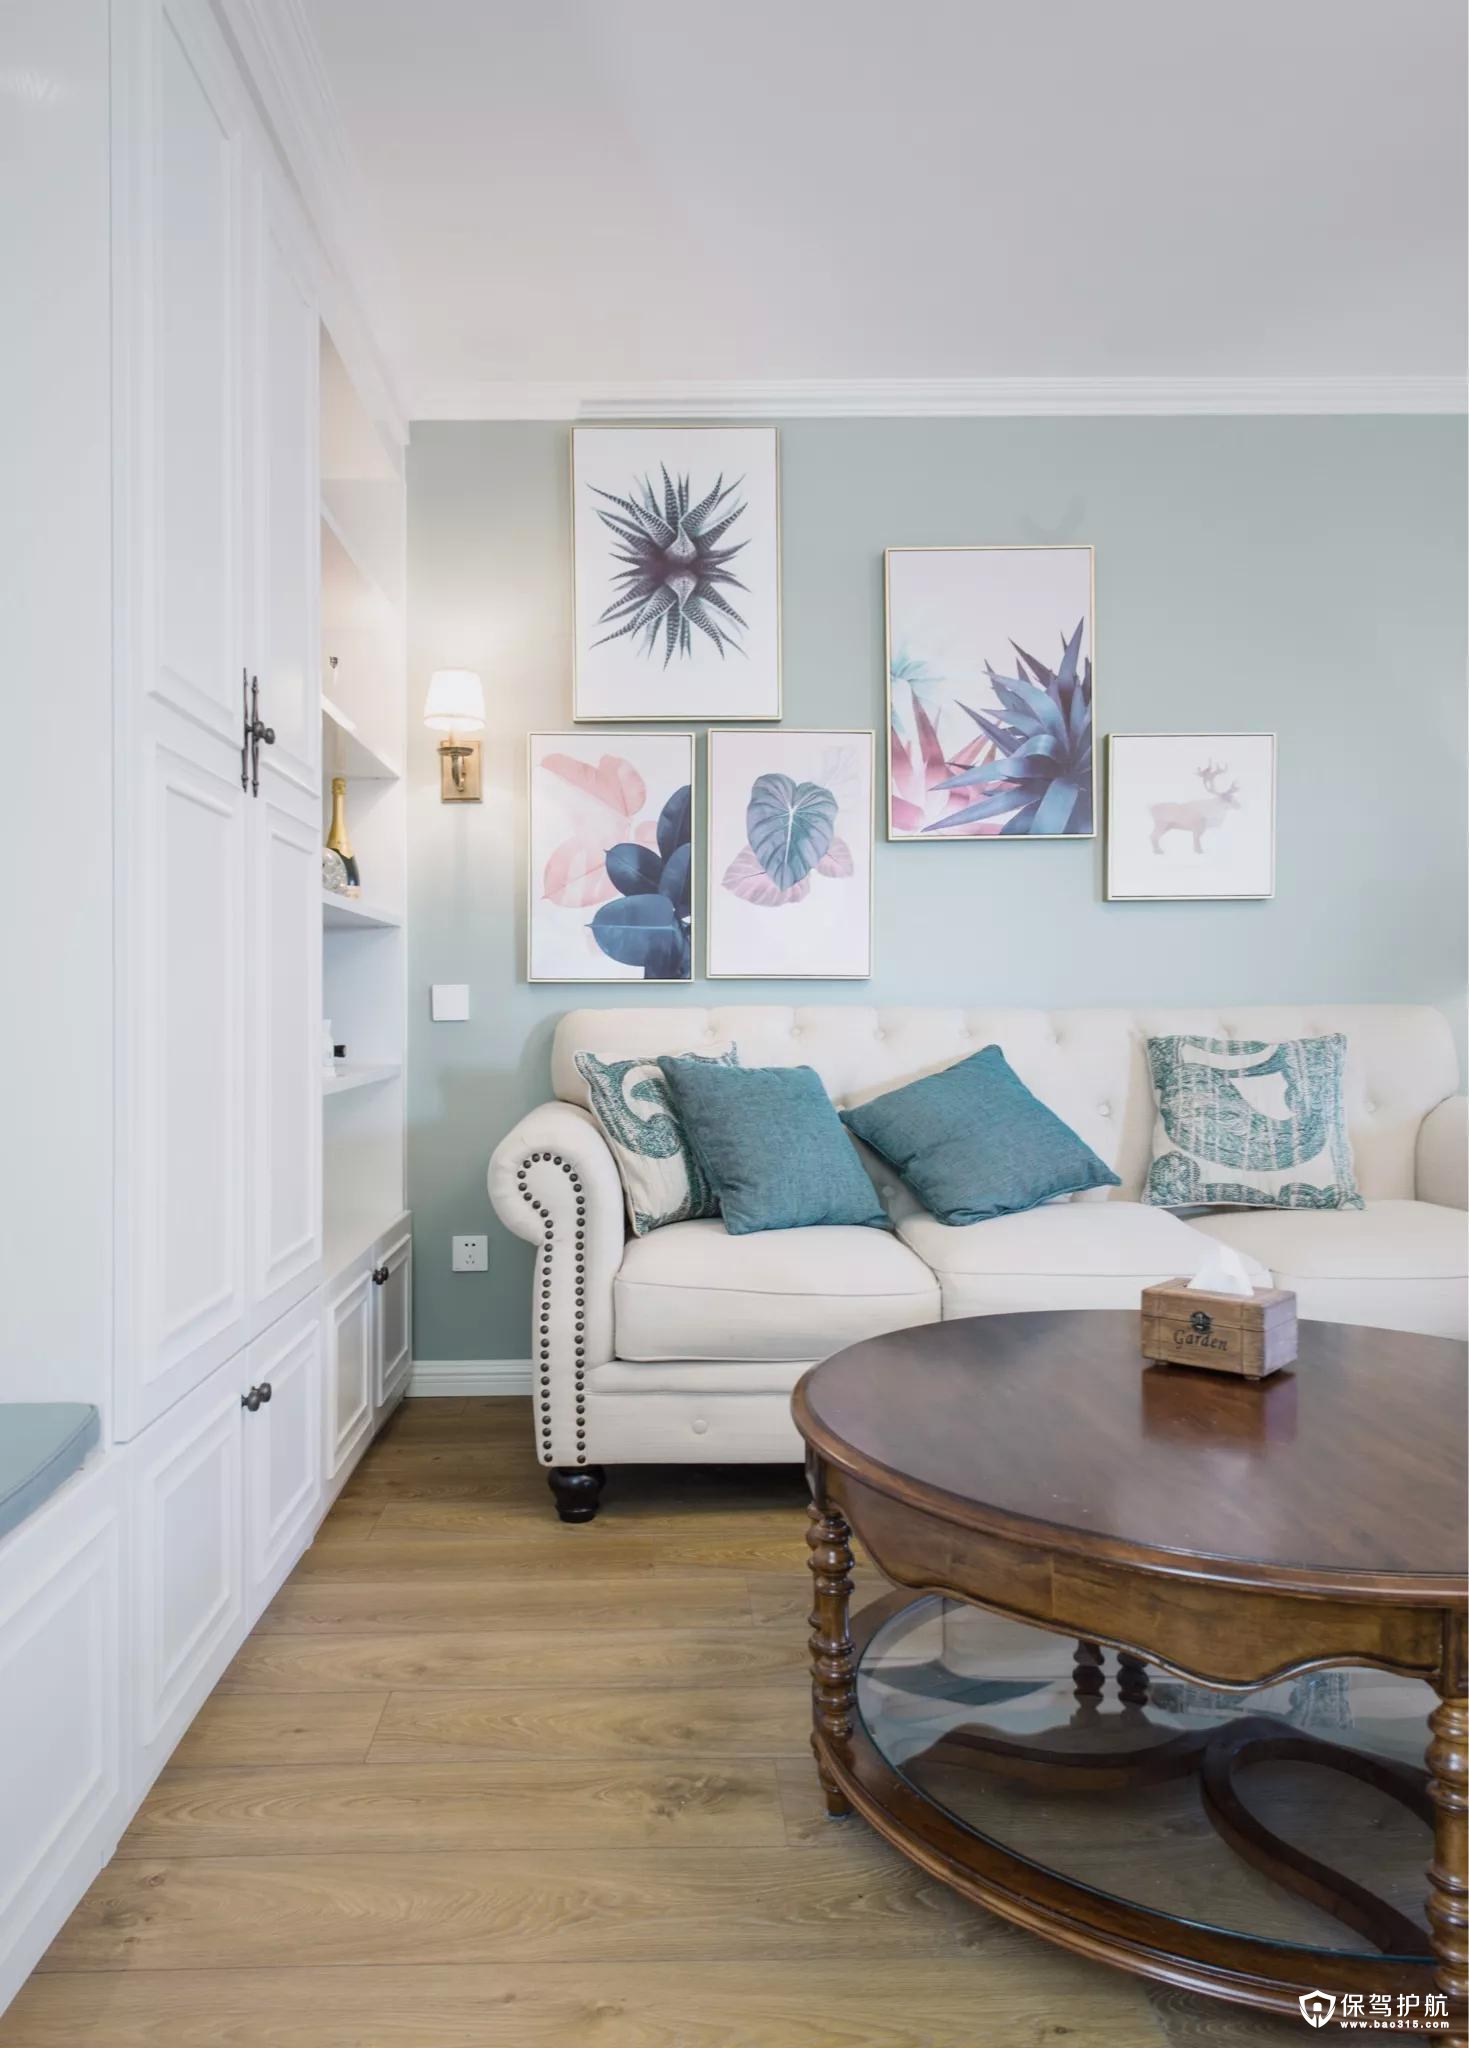 沙发墙在淡蓝色的空间基础，挂上几张清新文艺的装饰画，结合上舒适现代的美式布艺沙发，并在沙发墙角落装一盏壁灯，整个空间层次丰富、没感十足。